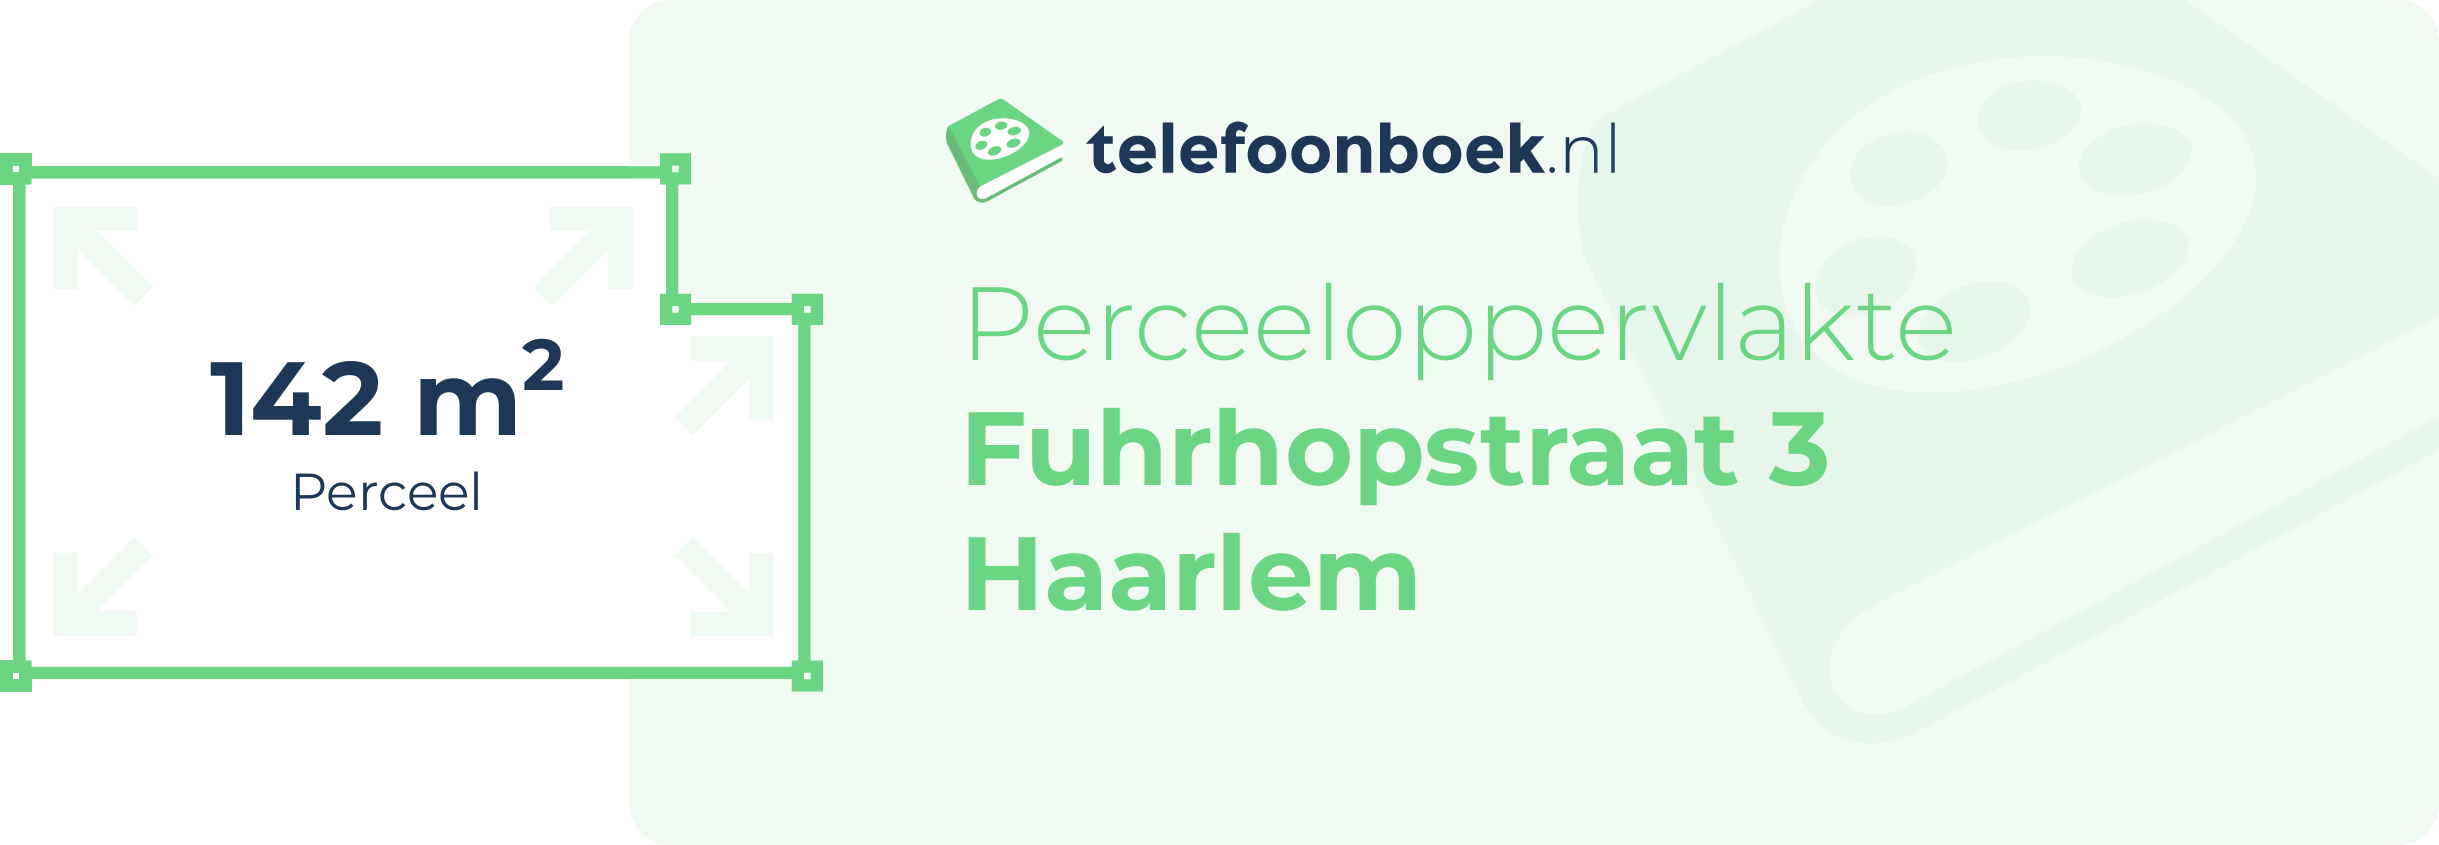 Perceeloppervlakte Fuhrhopstraat 3 Haarlem